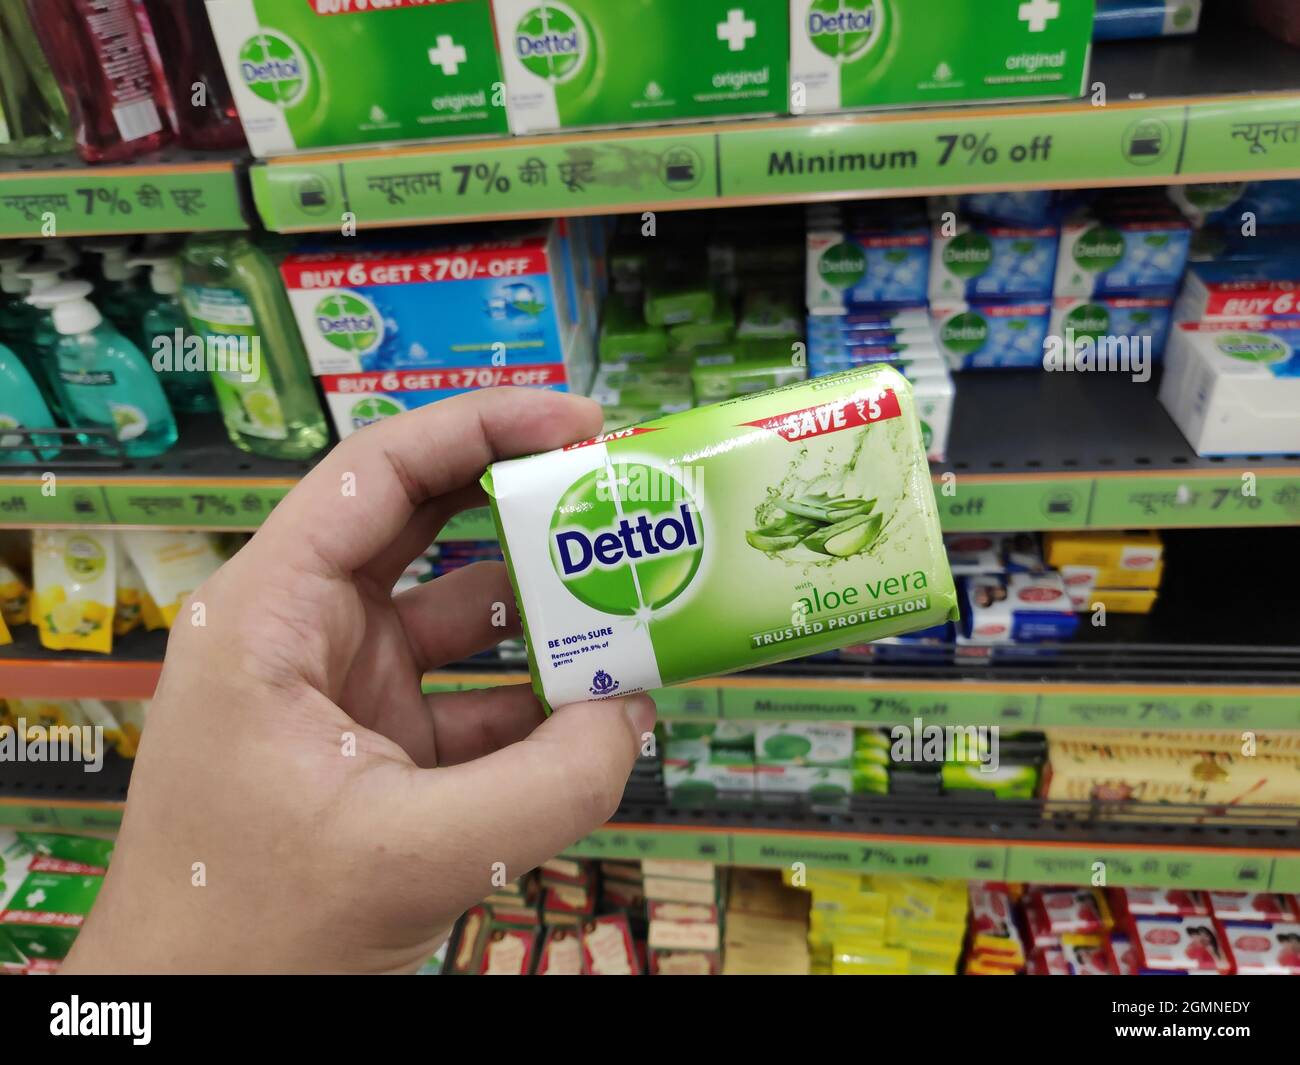 New Delhi, India - 20 aprile 2020: Sapone di Dettol in mano al centro commerciale, sapone antisettico di Dettol Foto Stock